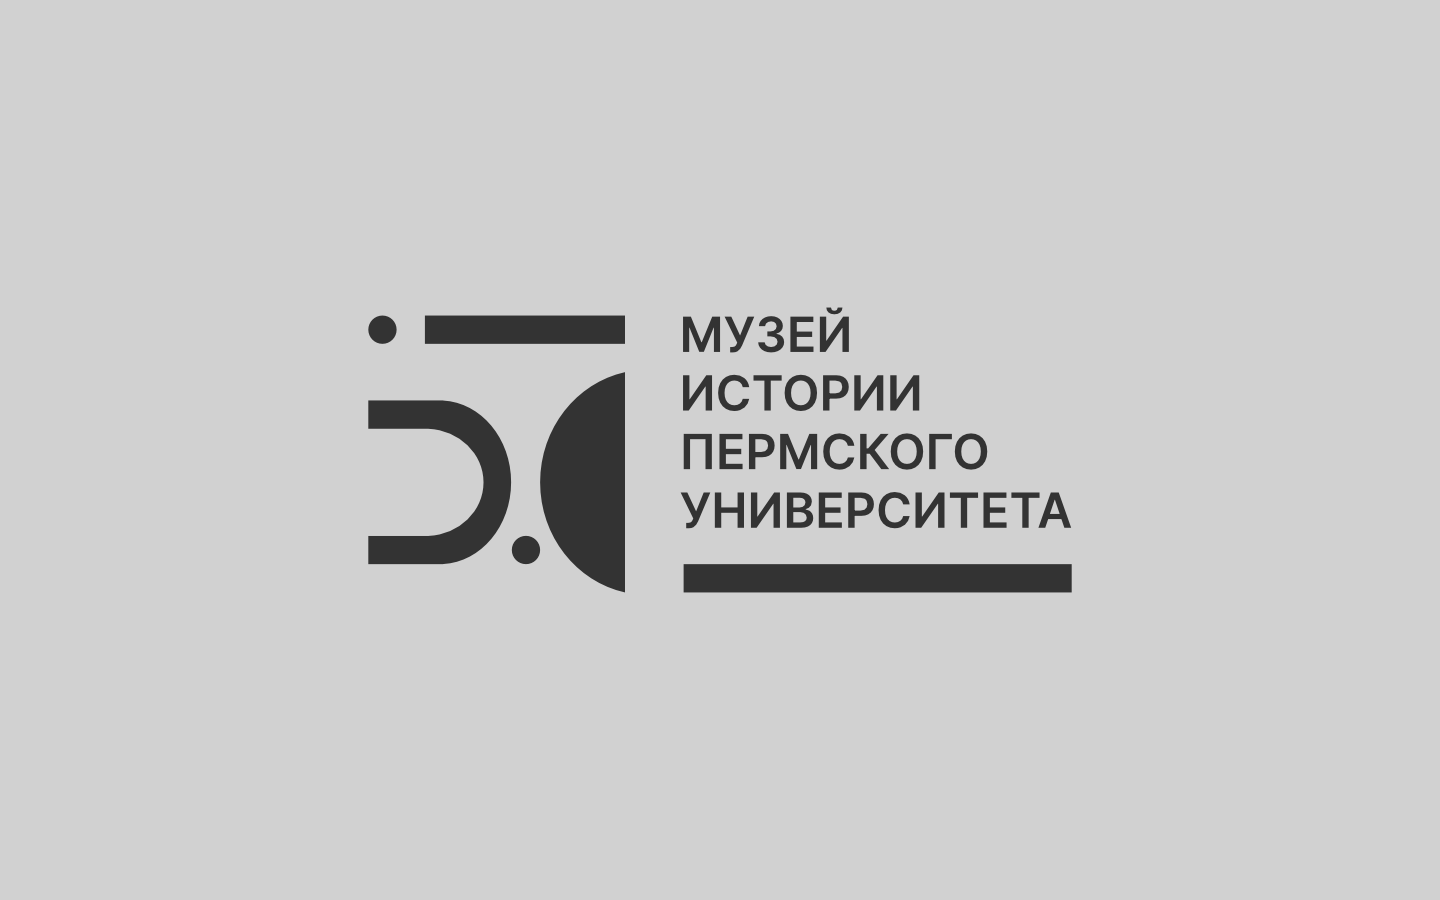 МУЗЕЙ ИСТОРИИ ПГУ. Логотип, event design мероприятий к 50-летию музея